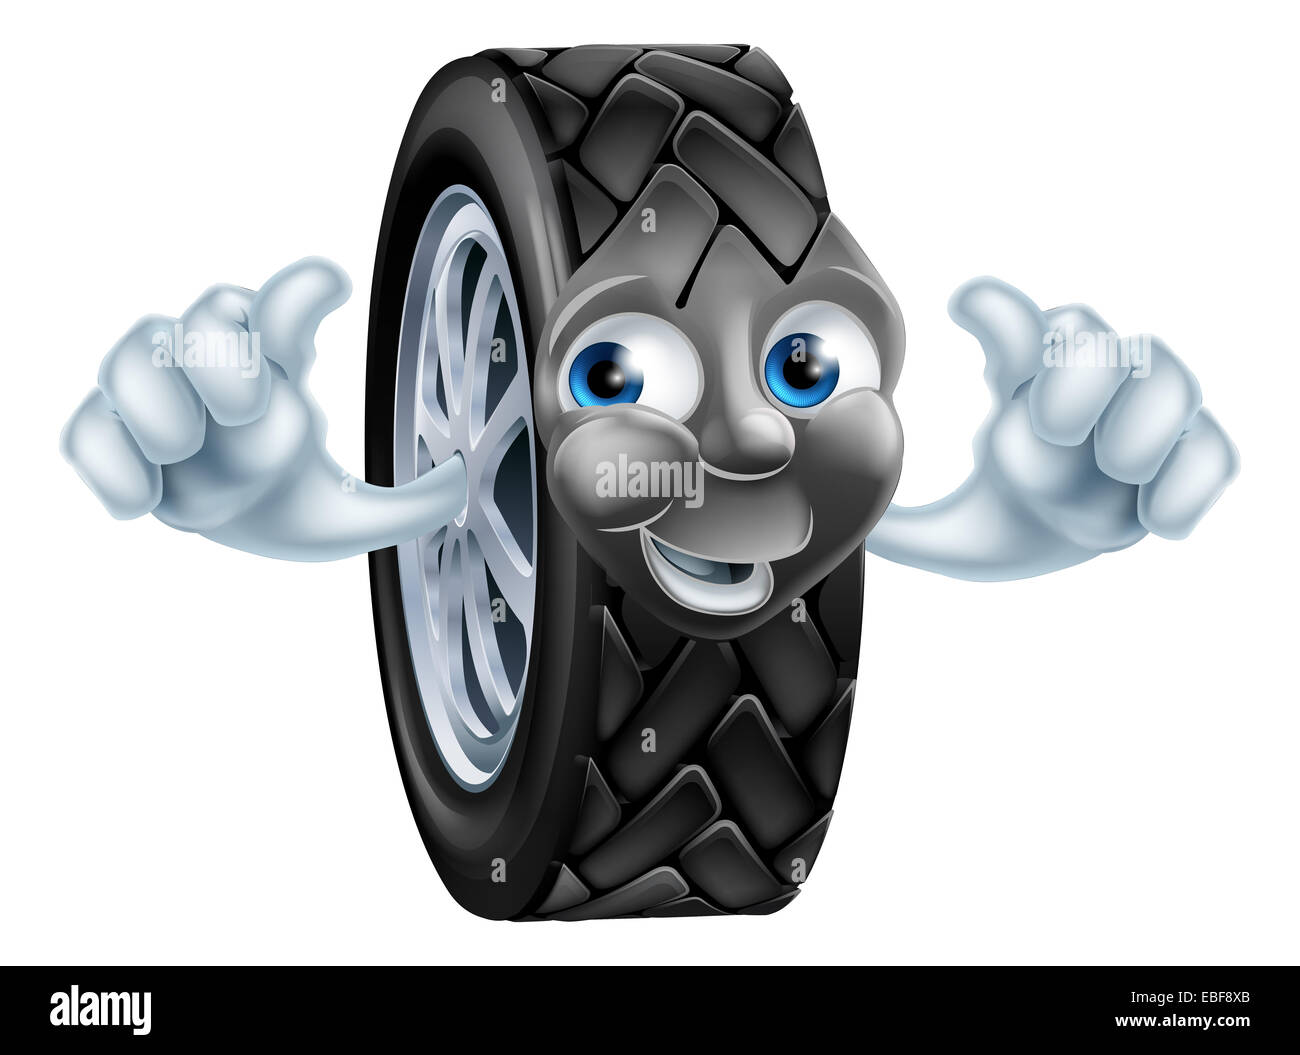 Una illustrazione di un cartoon pneumatico (pneumatico) il carattere o la mascotte dando un pollice in alto Foto Stock